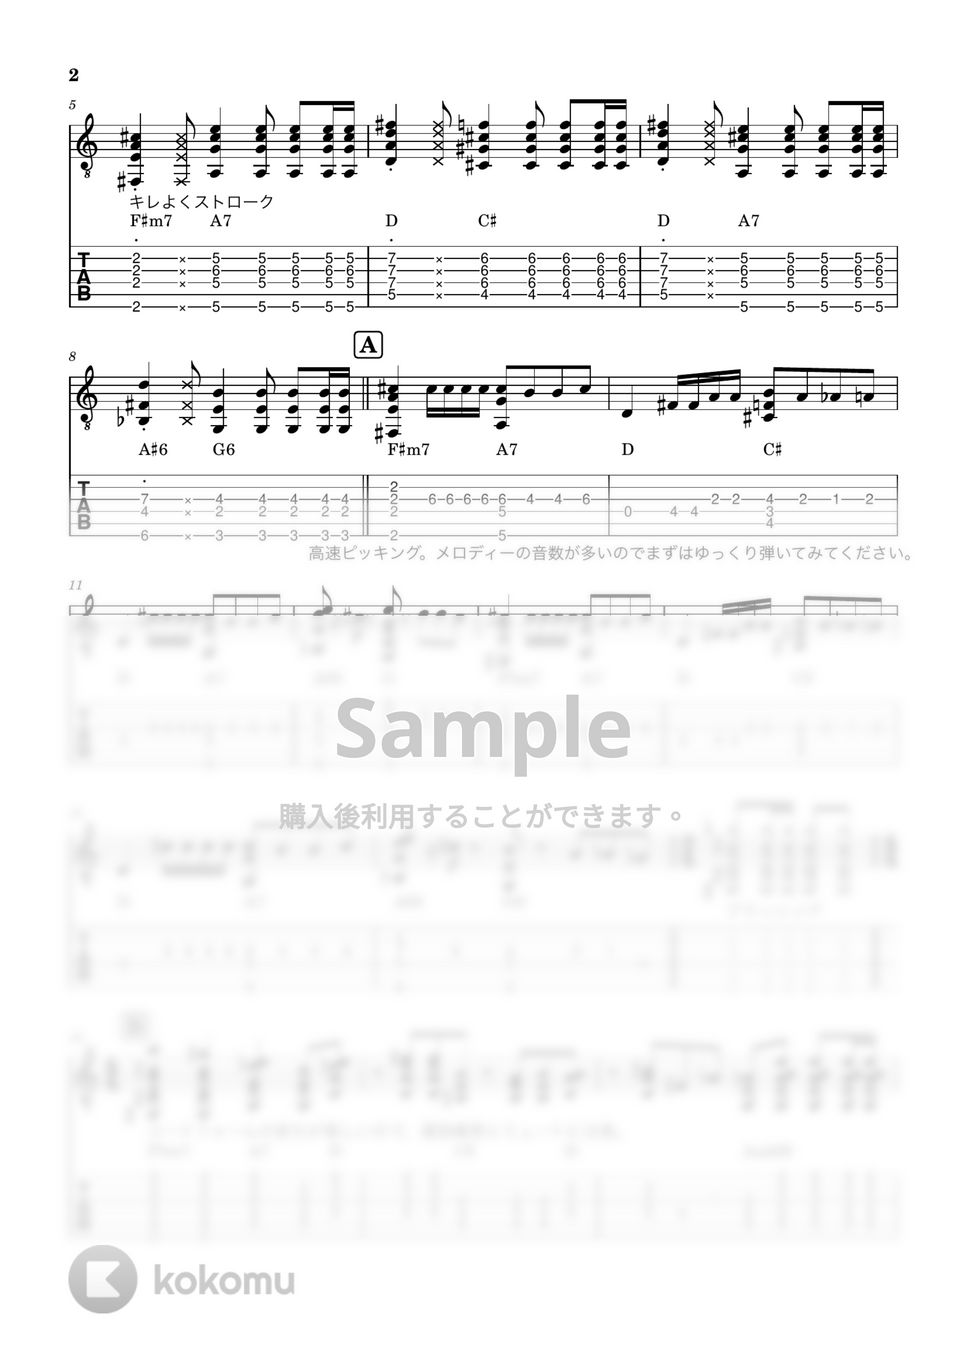 King Gnu - 一途 (ピック弾きソロギターアレンジ) by Dsuke